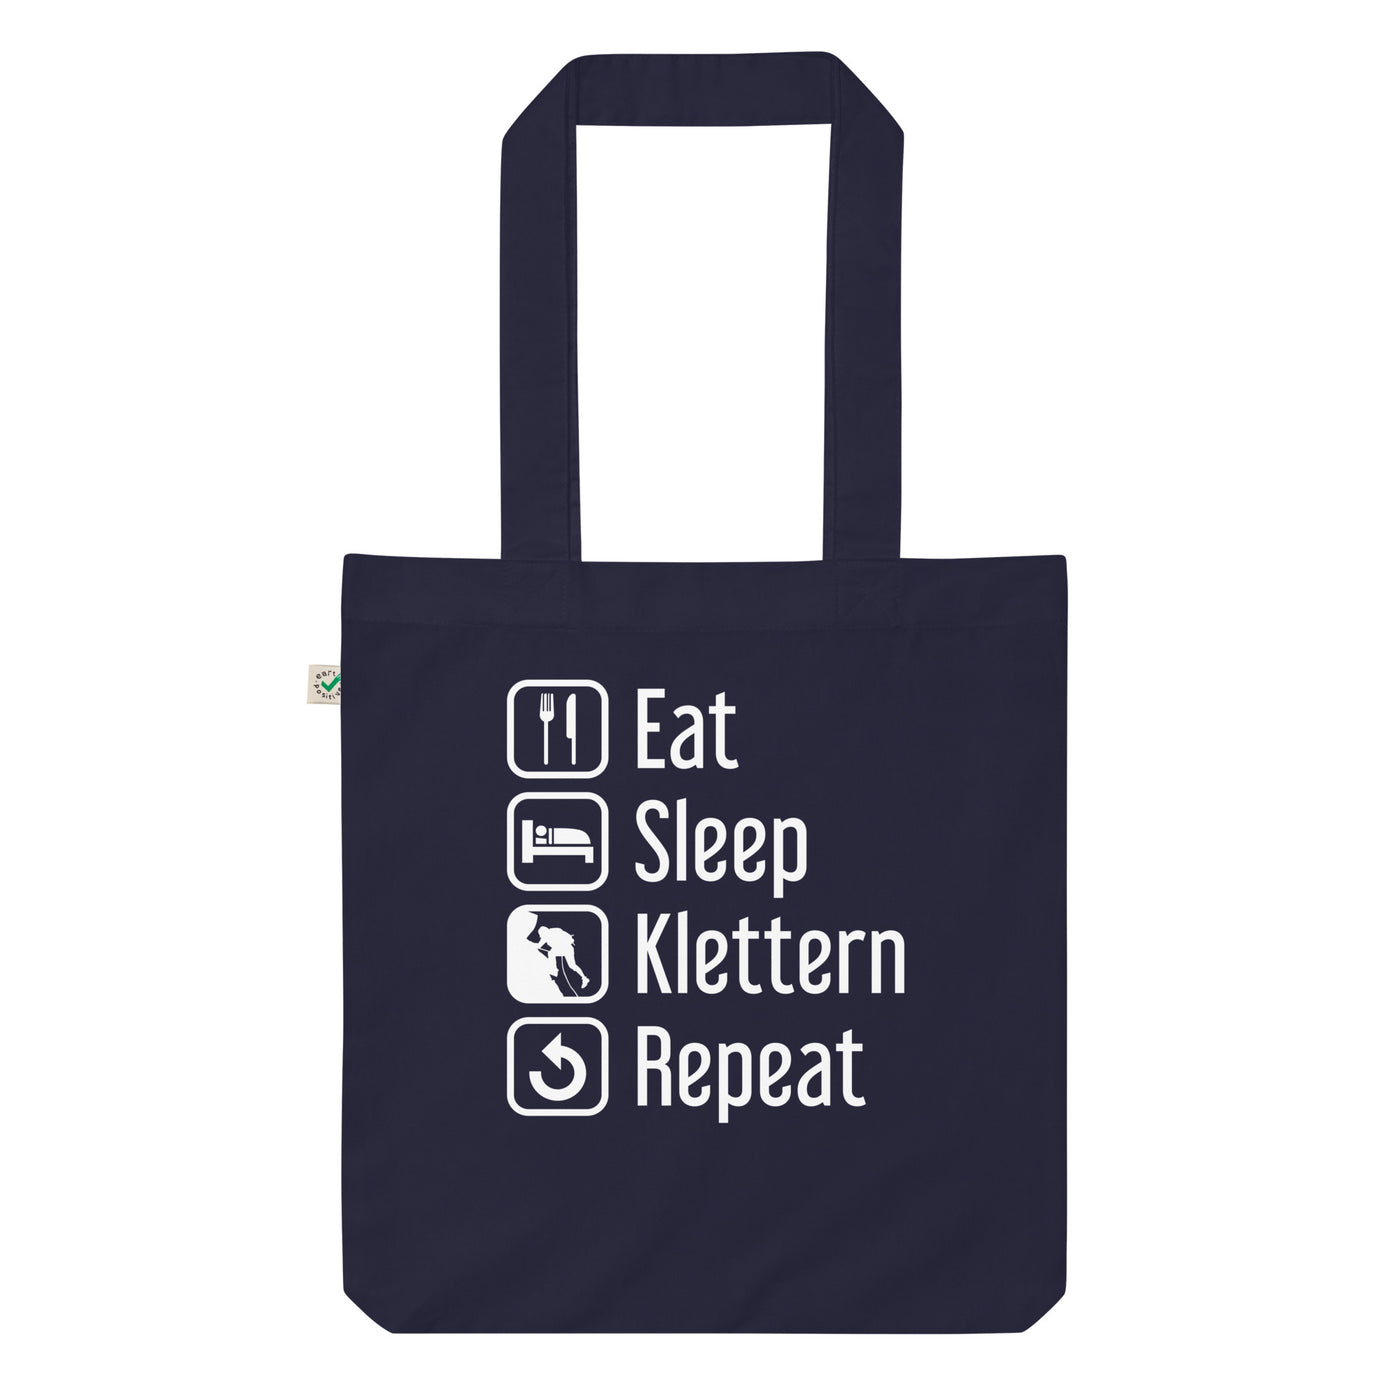 Eat Sleep Klettern Repeat - Organic Einkaufstasche klettern Navy